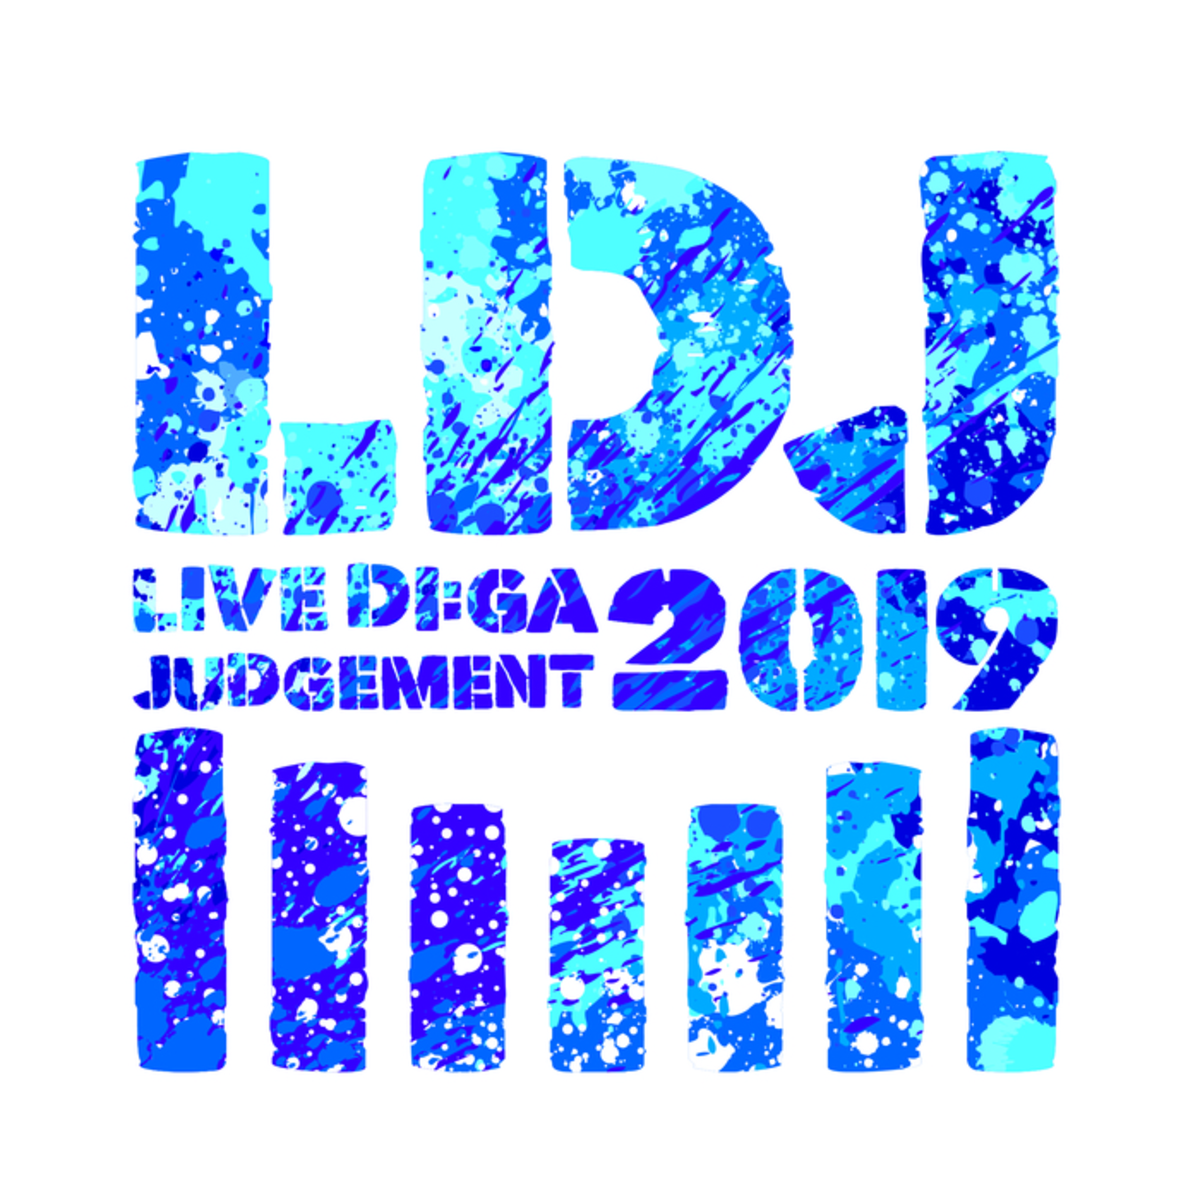 渋谷で開催の年越しイベント Live Di Ga Judgement 19 全出演者を発表 9mm Shishamo Ncis バンアパ フレンズ 夜ダン サウシー コレサワら29組出演